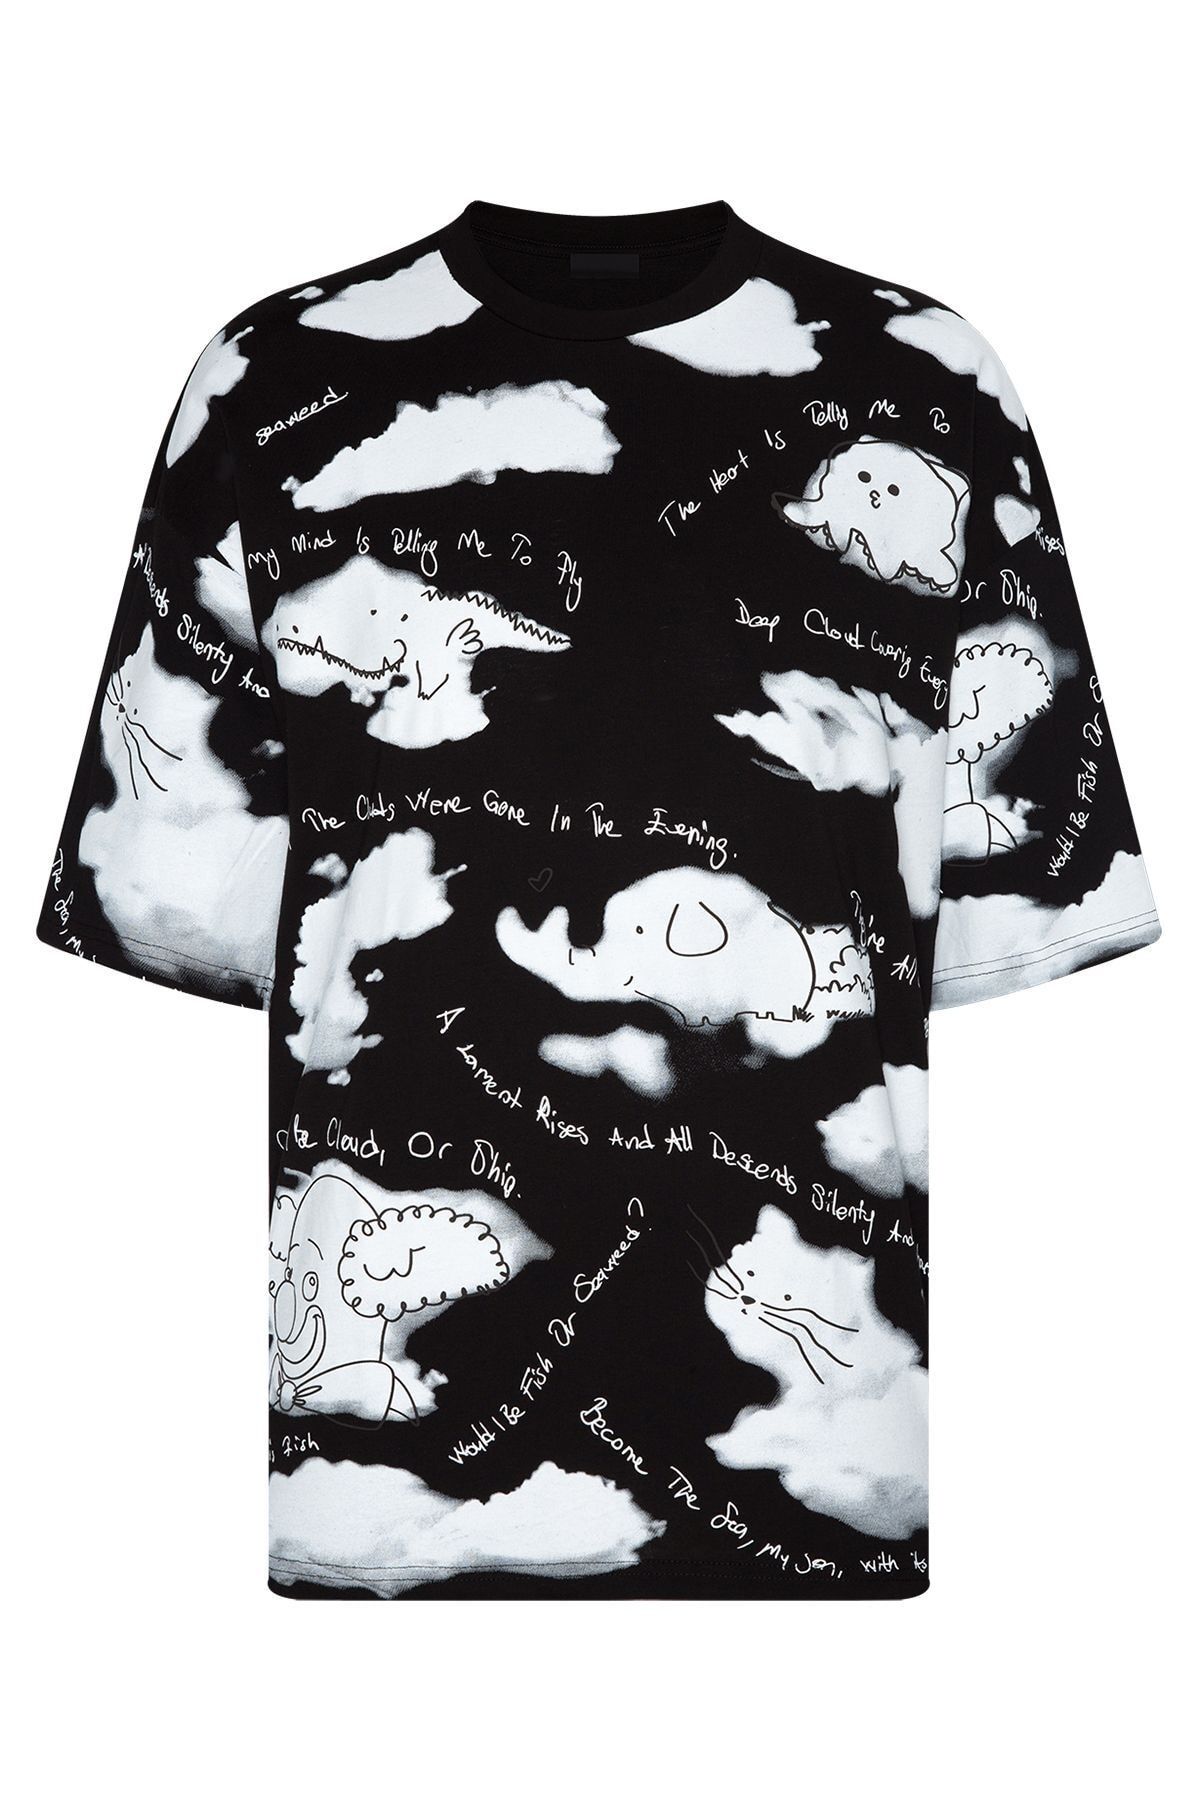 XHAN Siyah Baskılı Oversize T-shirt 2yxe2-45959-02